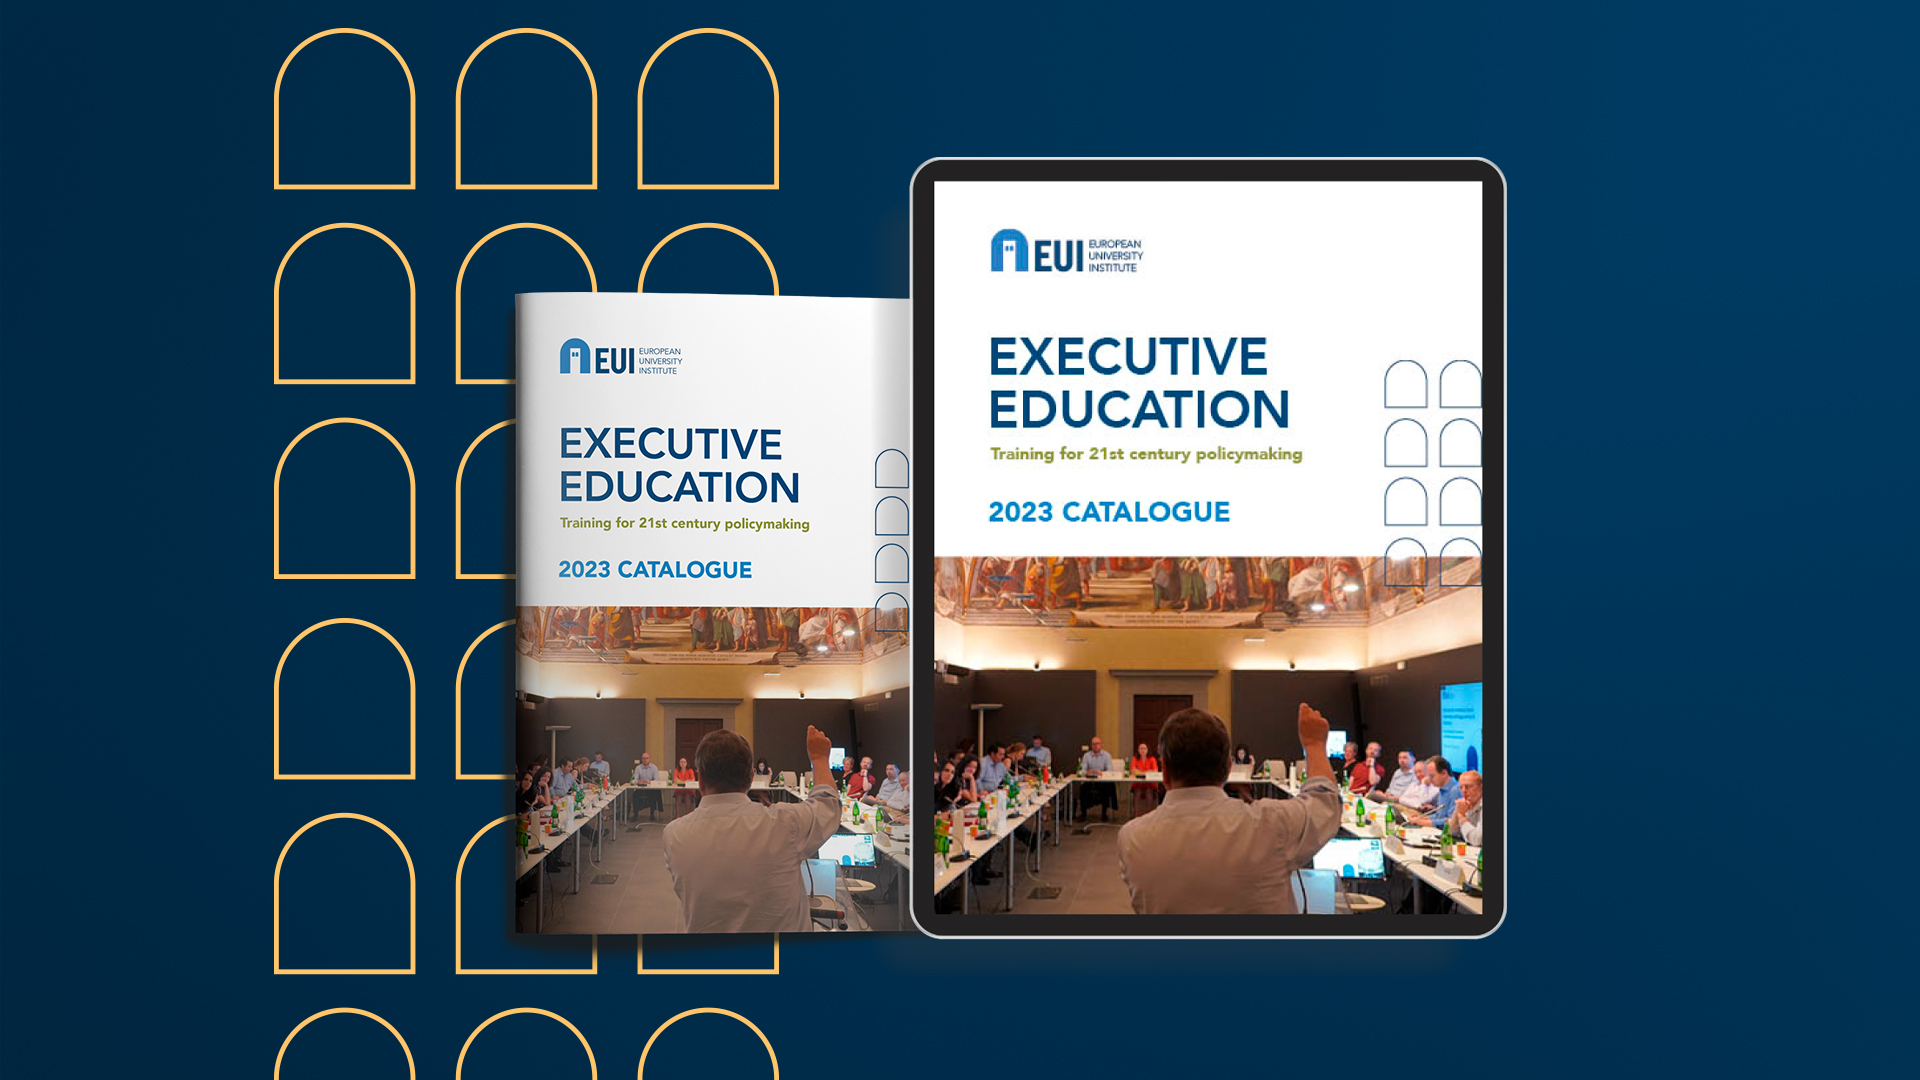 EUI 2023 Executive Education Catalogue